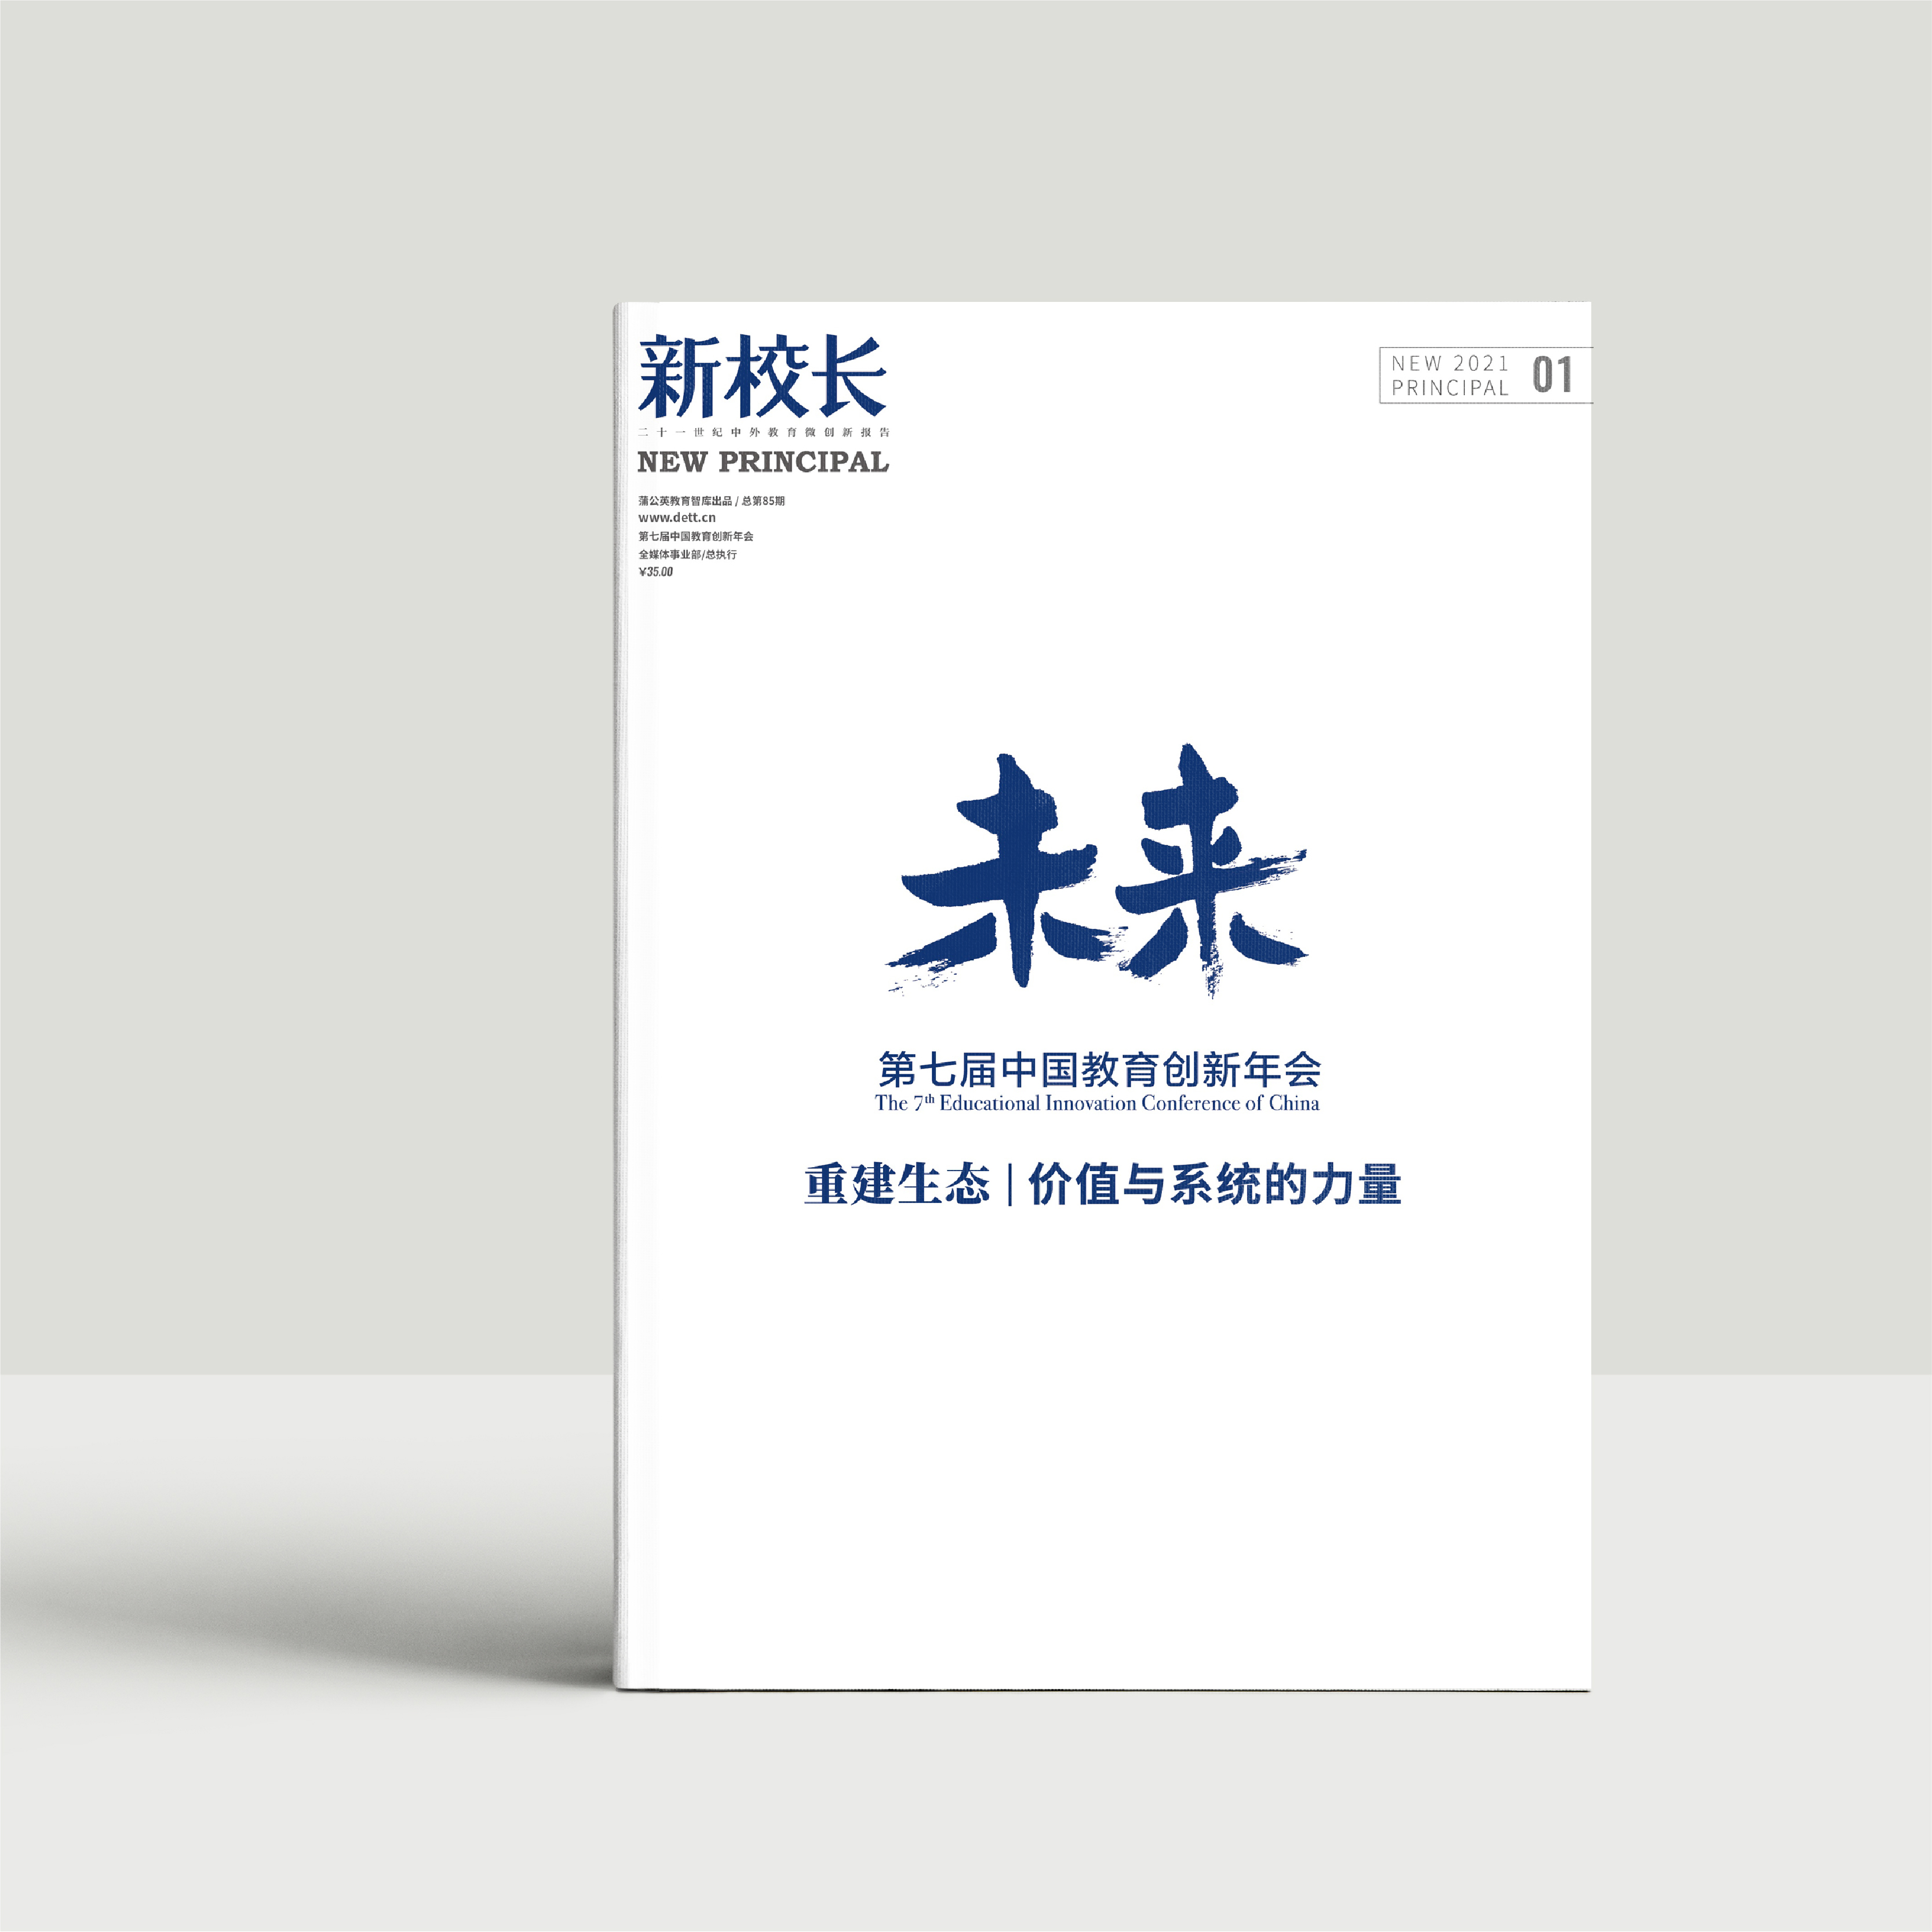 2021年第新校长1期：第七届中国教育创新年会